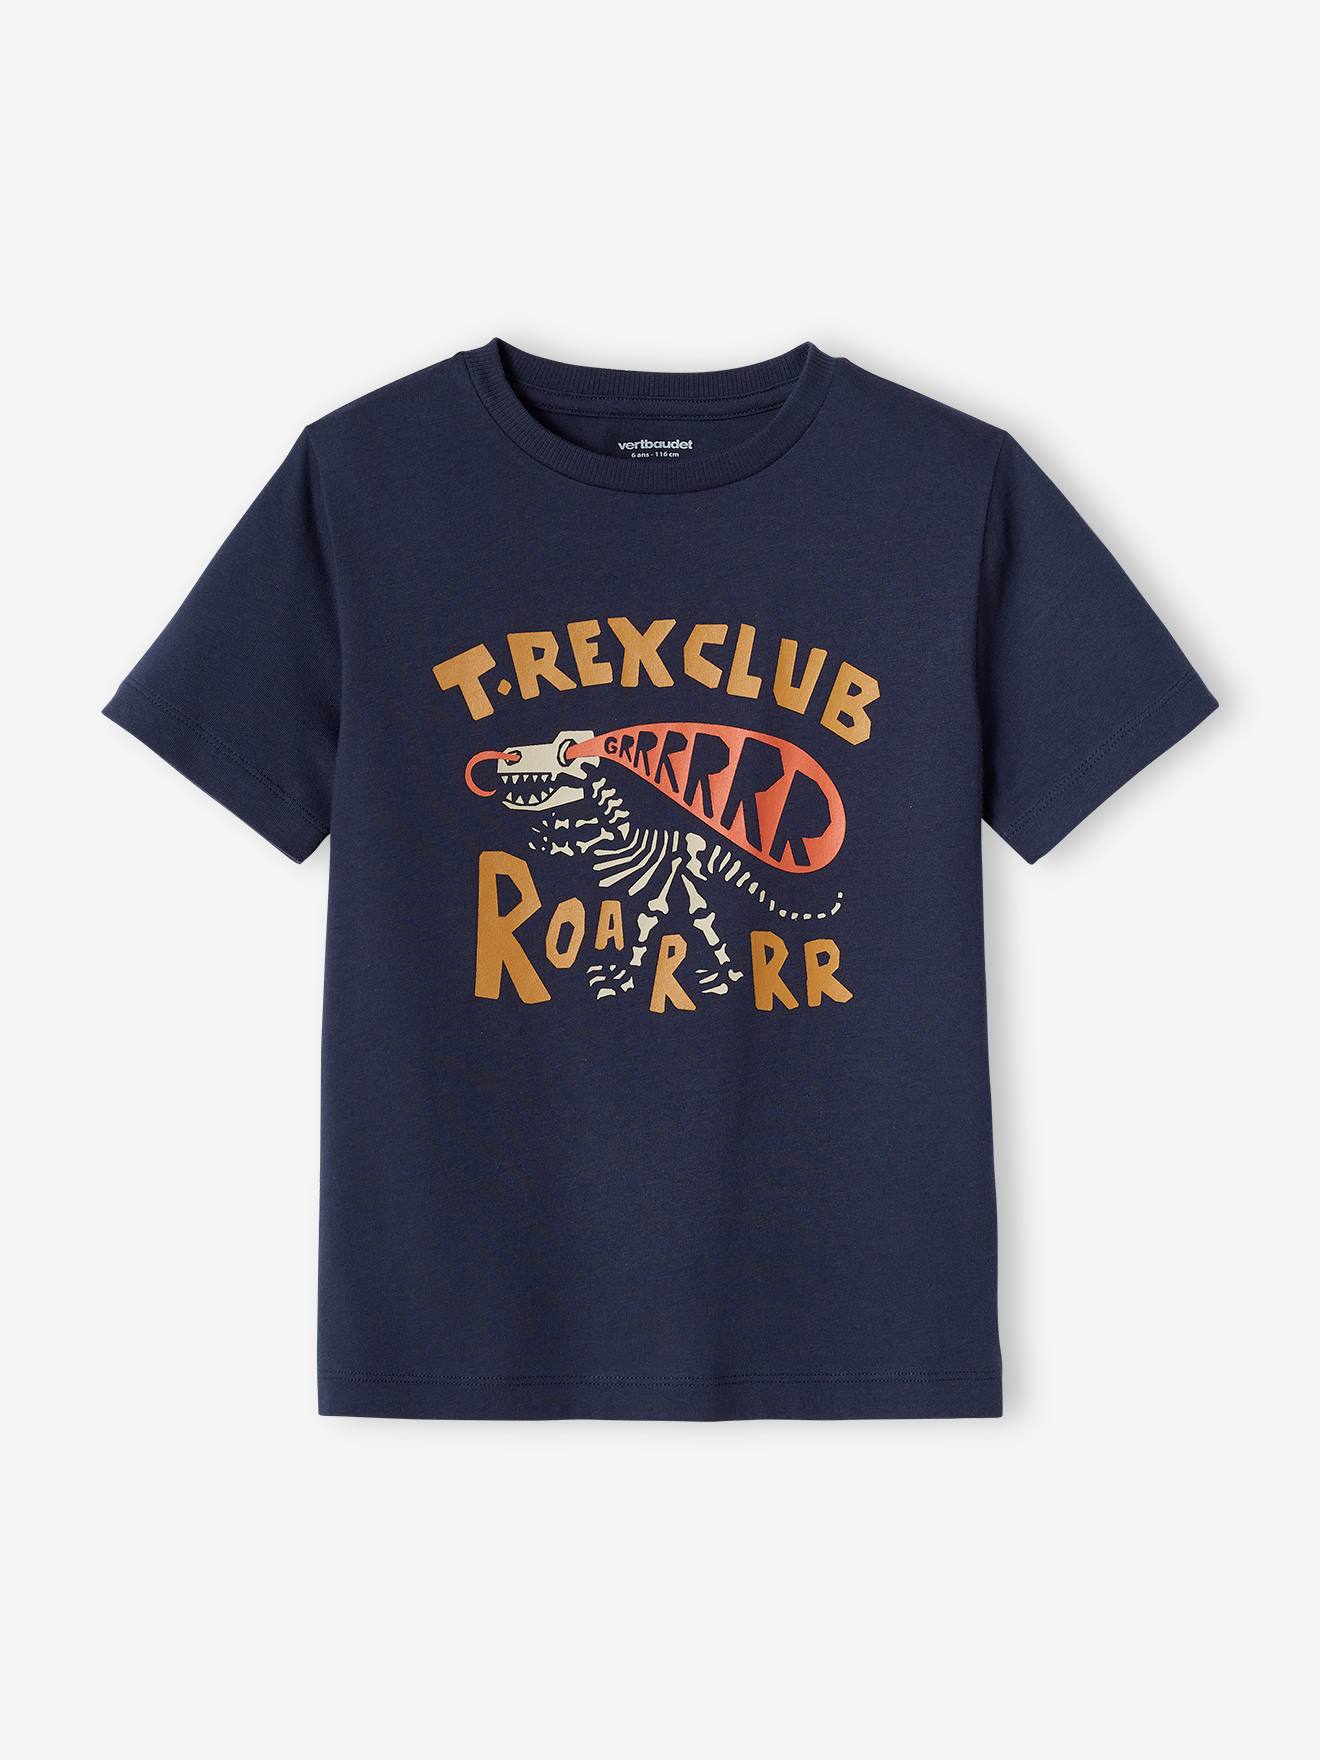 T-shirt dinosaure garçon bleu nuit